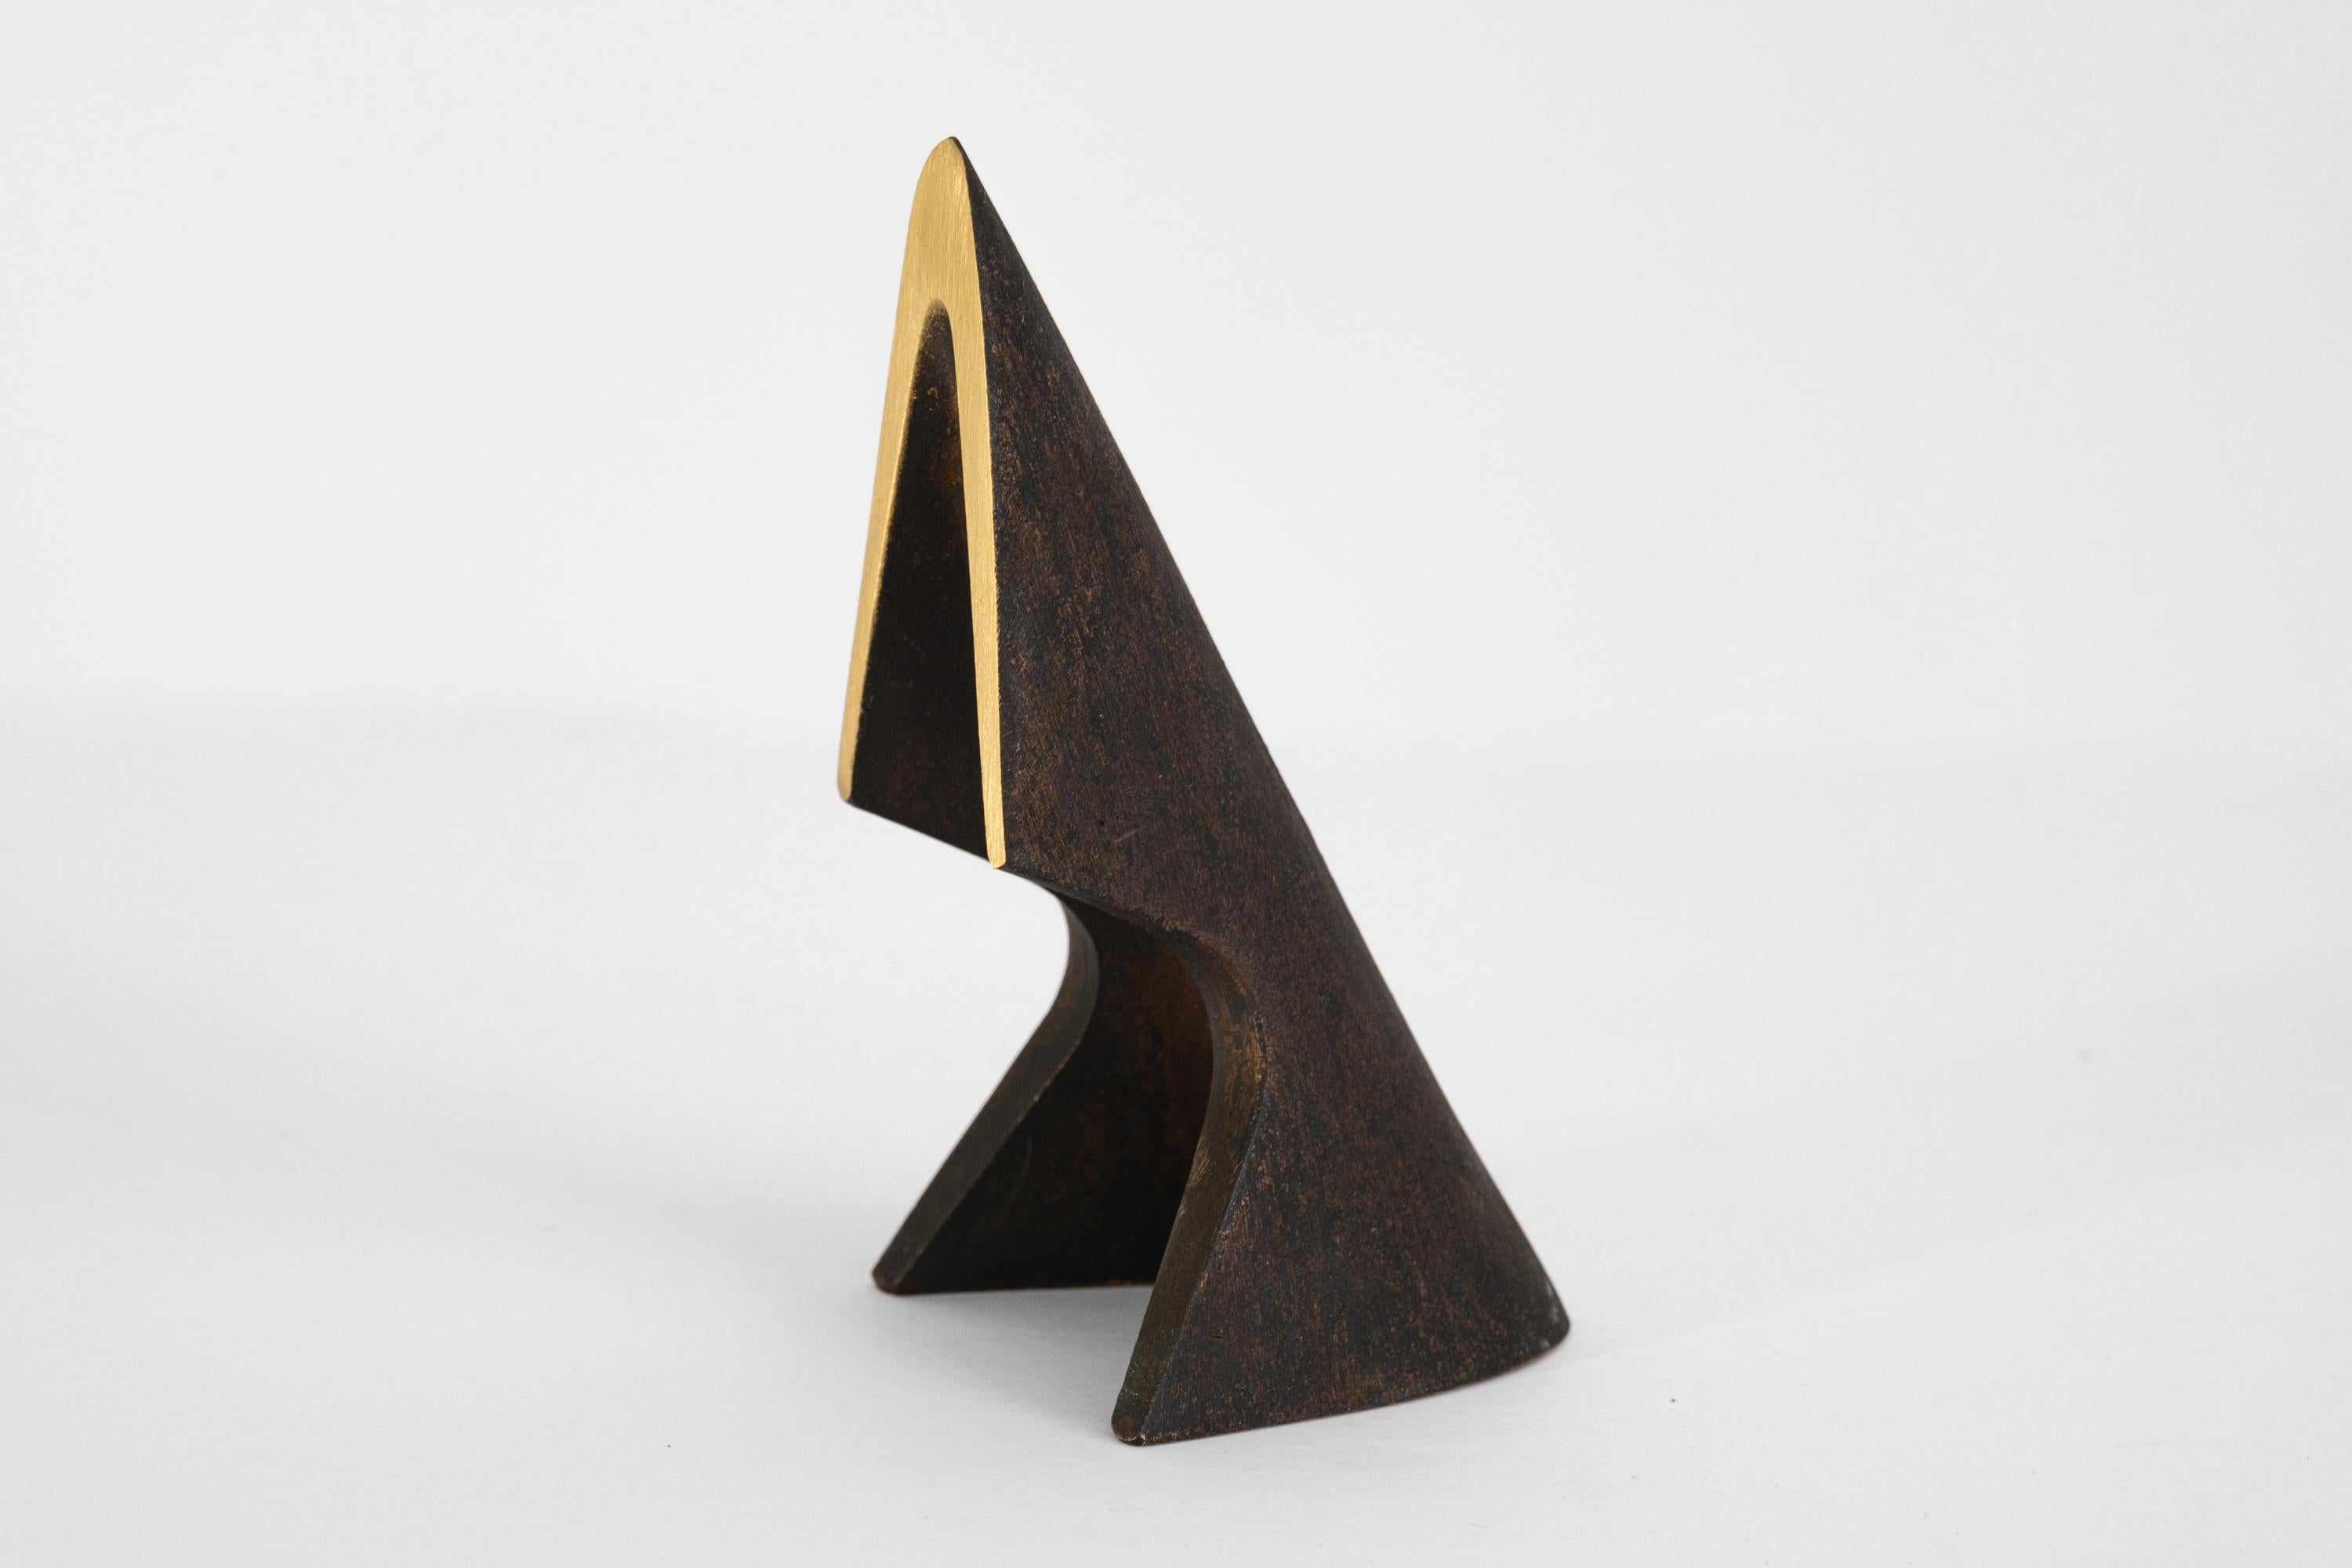 Ein Paar Carl Auböck Modell #4099 patinierte Messing Buchstützen. Dieses unglaublich raffinierte und skulpturale Paar Buchstützen wurde in den 1950er Jahren entworfen und ist aus patiniertem und poliertem Messing gefertigt.

Hergestellt von Carl